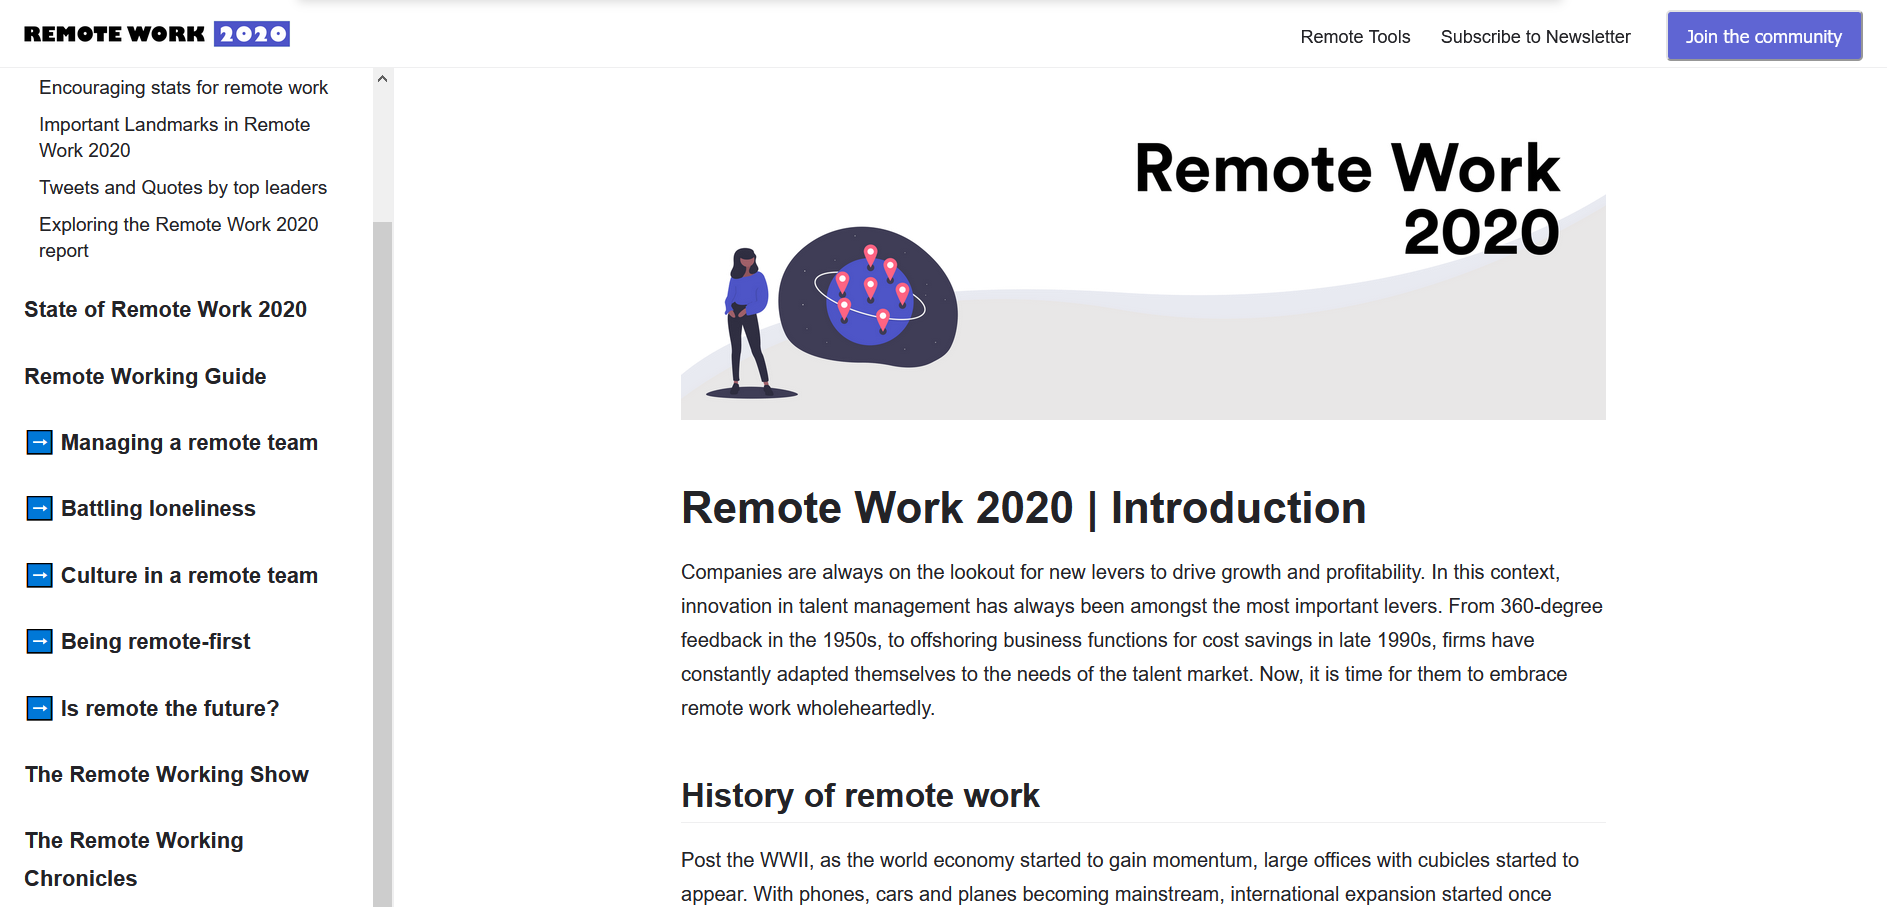 7 Best Alternatives to Remote Work 2020